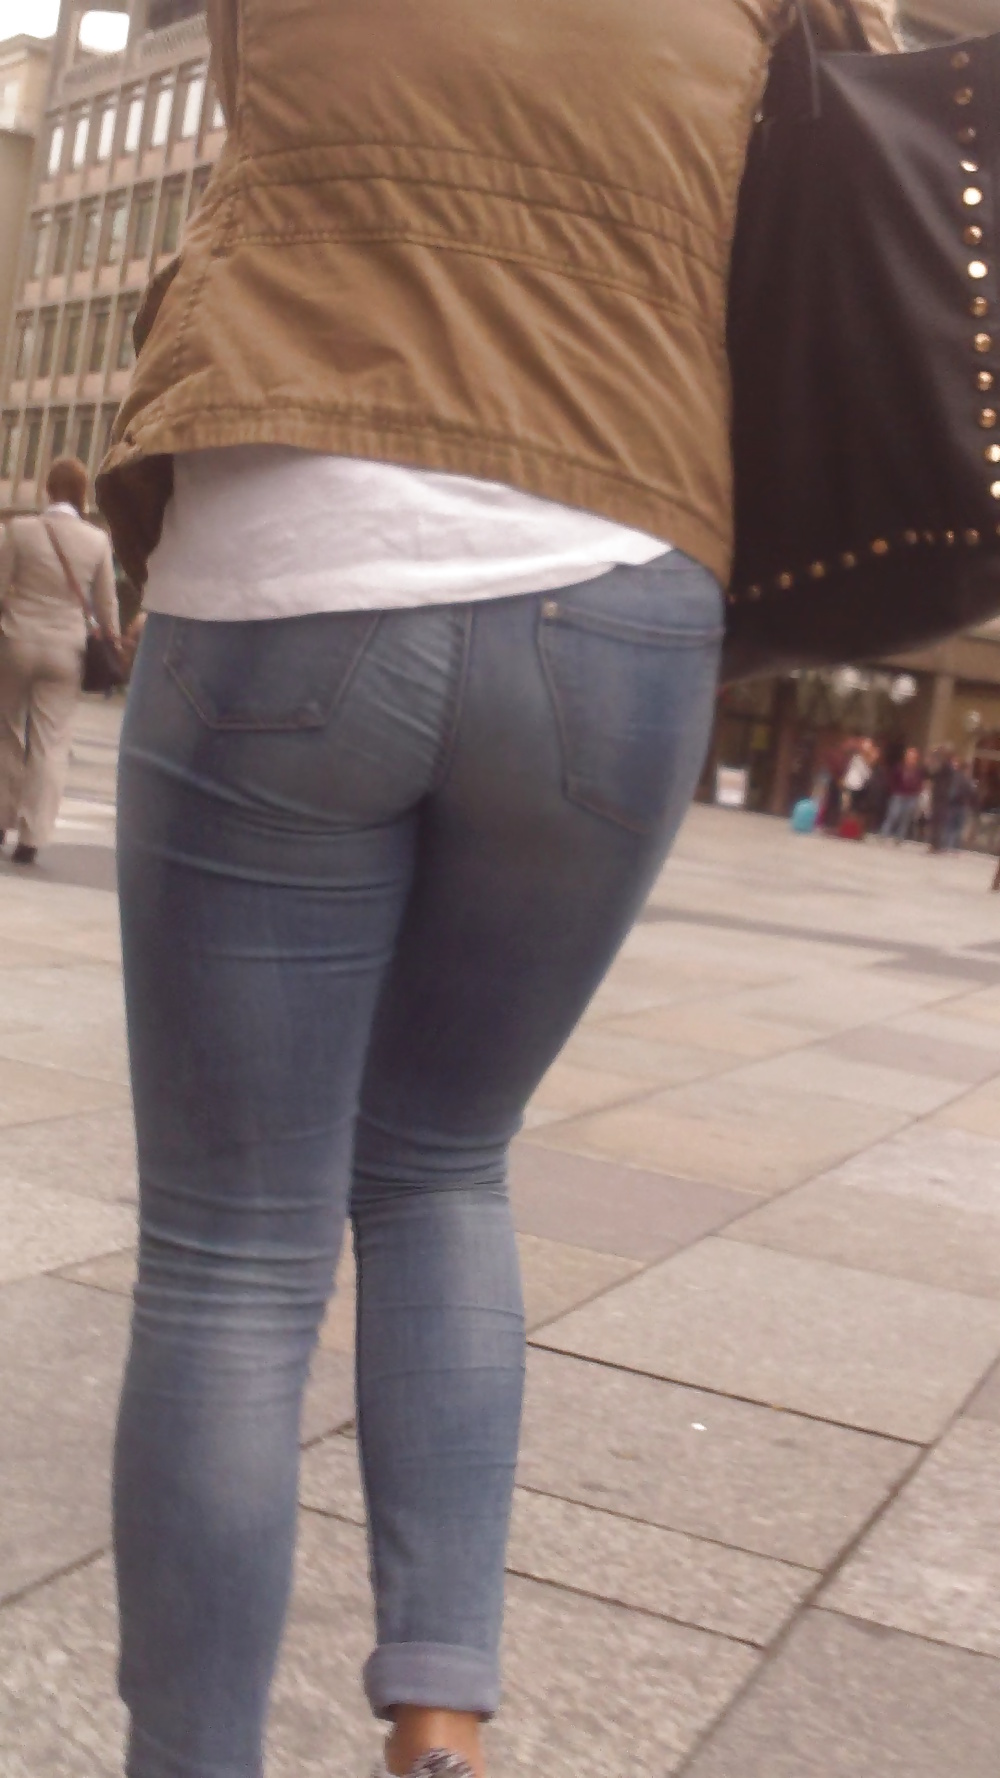 Popular teen girls ass & butt in jeans Part 6 #32010340